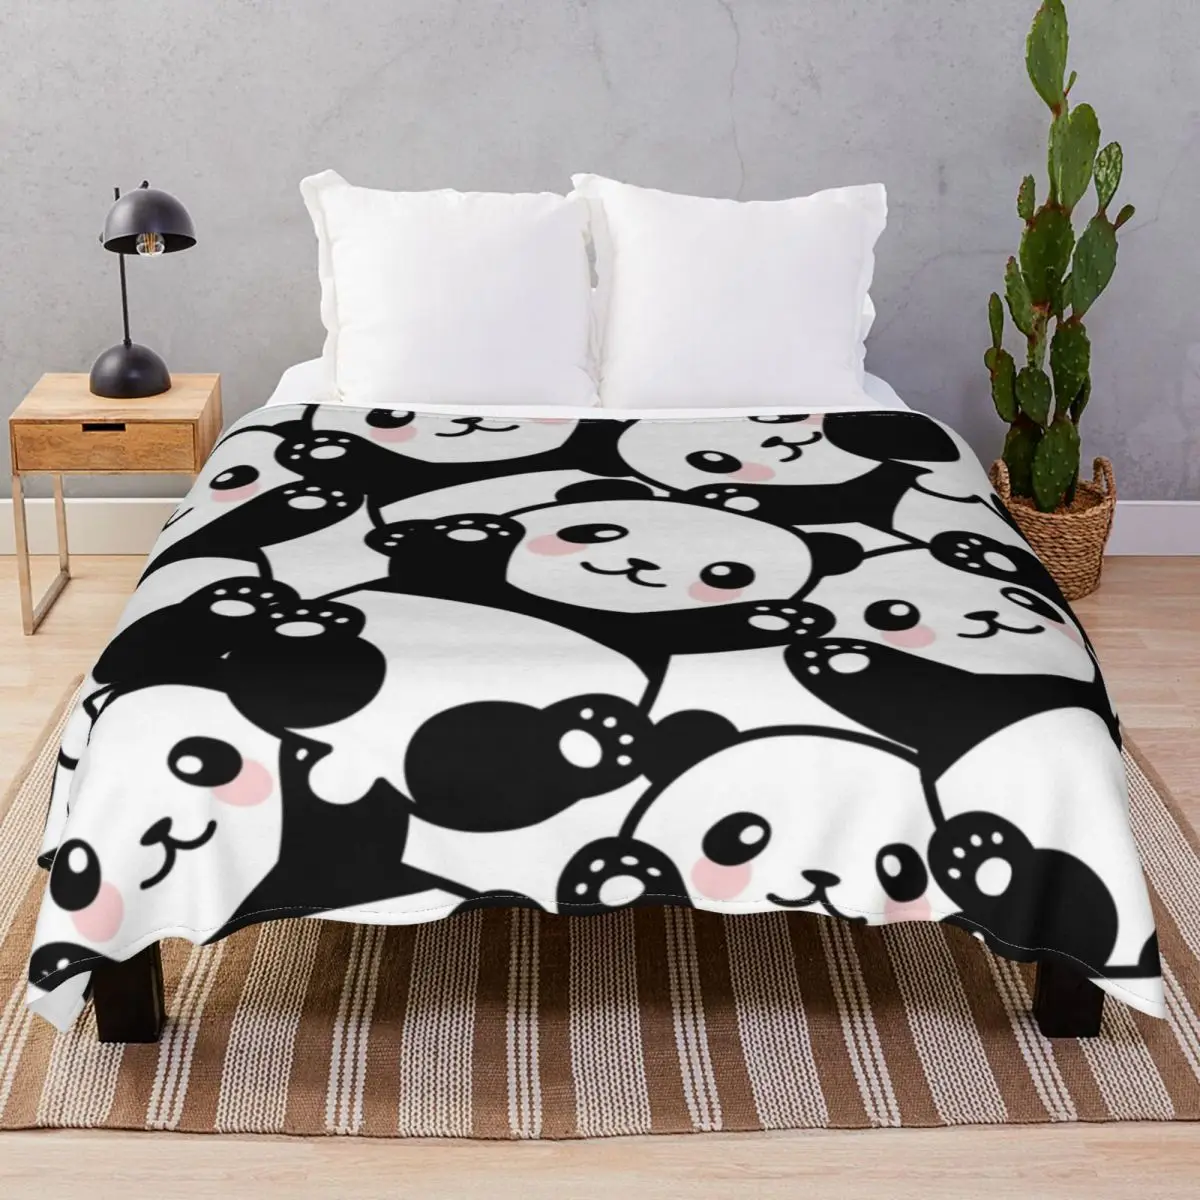 

Одеяло Pandas, всесезонное Фланелевое легкое тонкое покрывало для кровати, дивана, лагеря, офиса